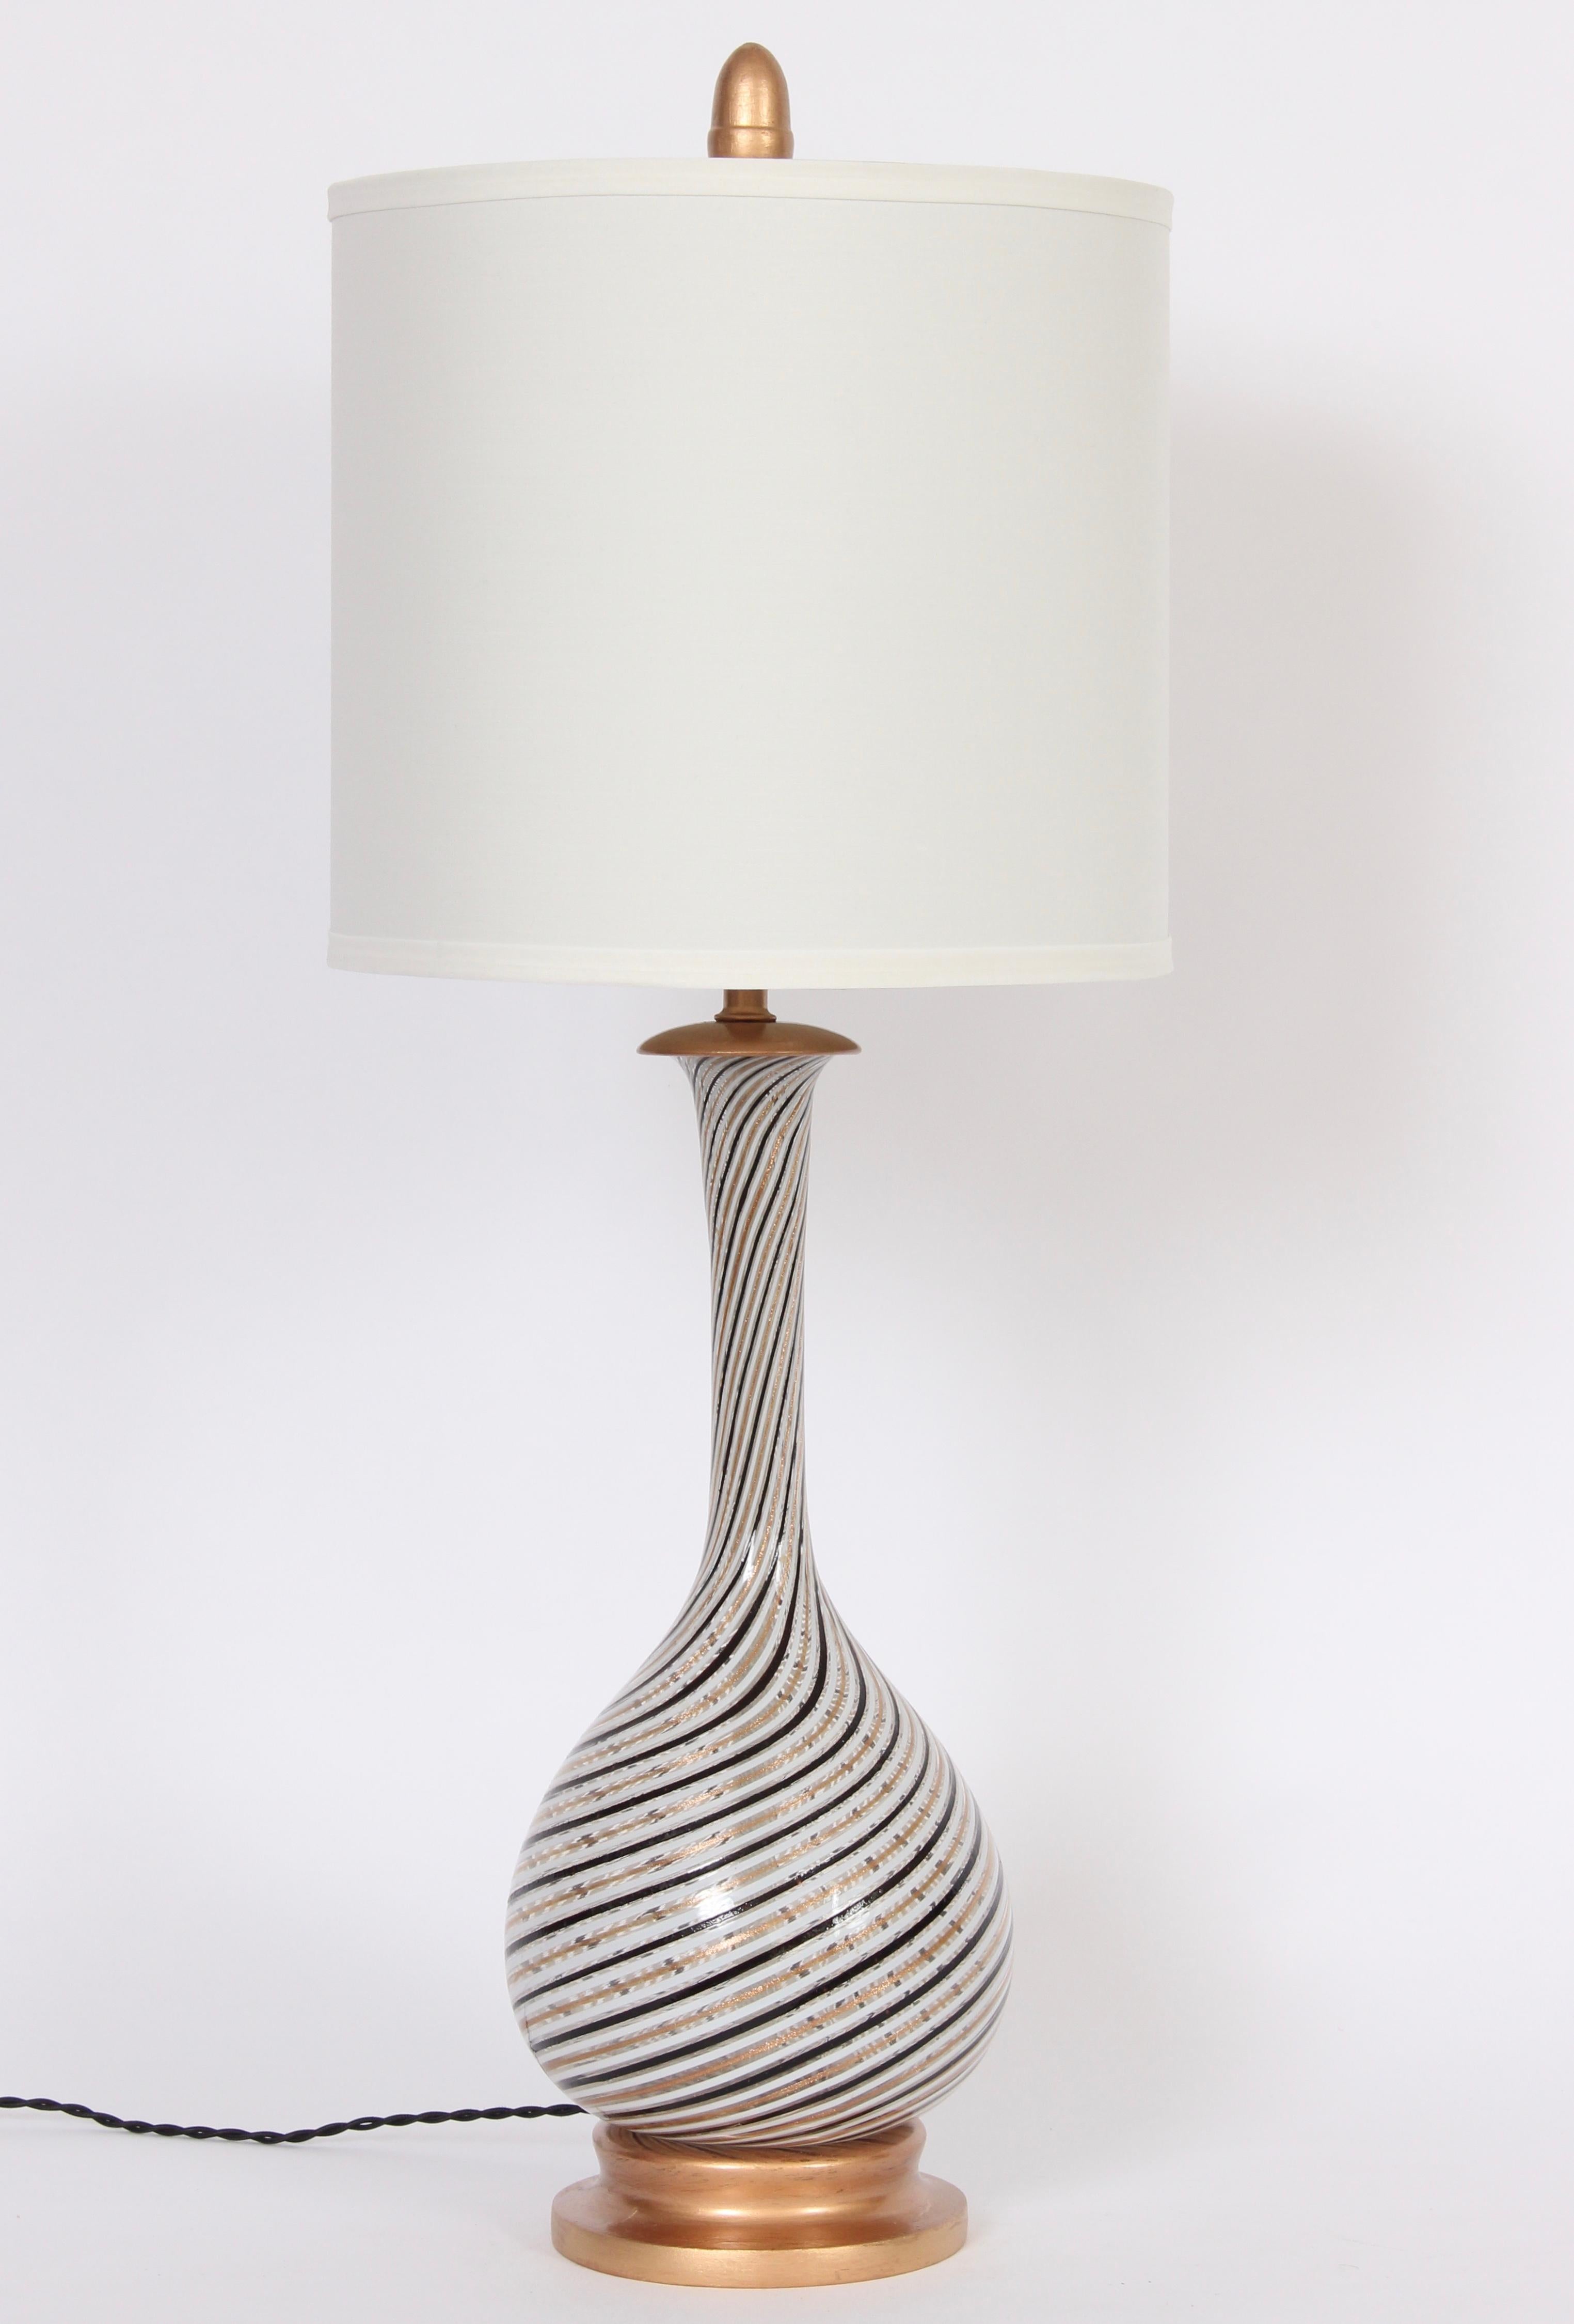 Substantielle lampe de table Dino Martens Aureliano Toso à spirale noire, blanche et cuivre. Une forme de gourde élancée, fabriquée à la main, en verre blanc avec une décoration à rayures diagonales noires et cuivrées. Accentué par le capuchon, la